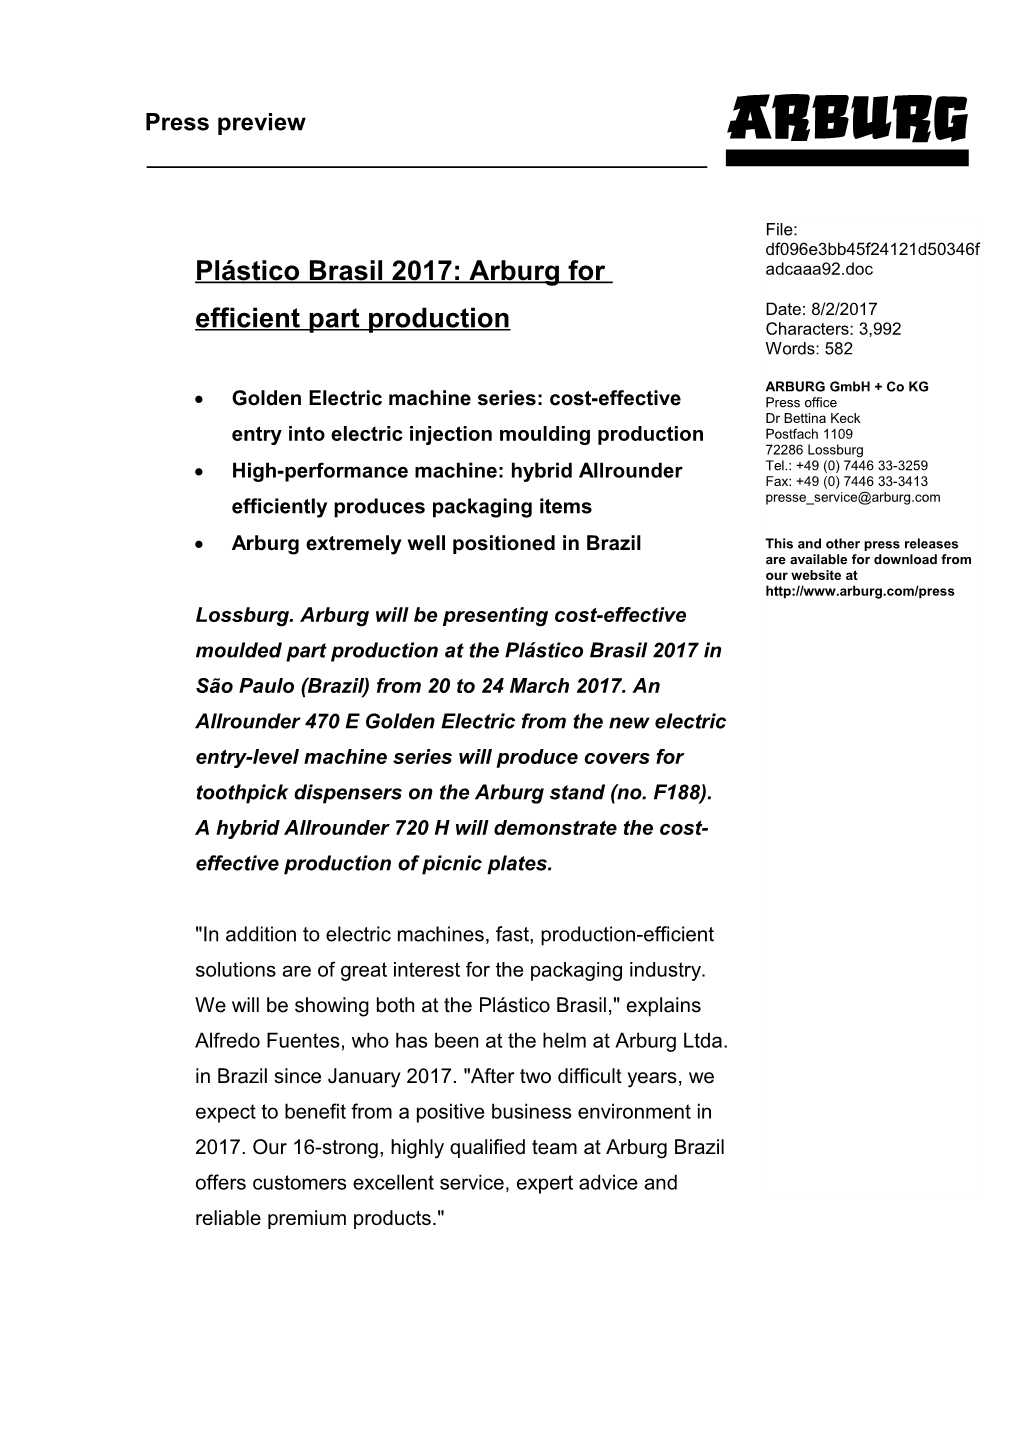 Plástico Brasil 2017: Arburg for Efficient Part Production